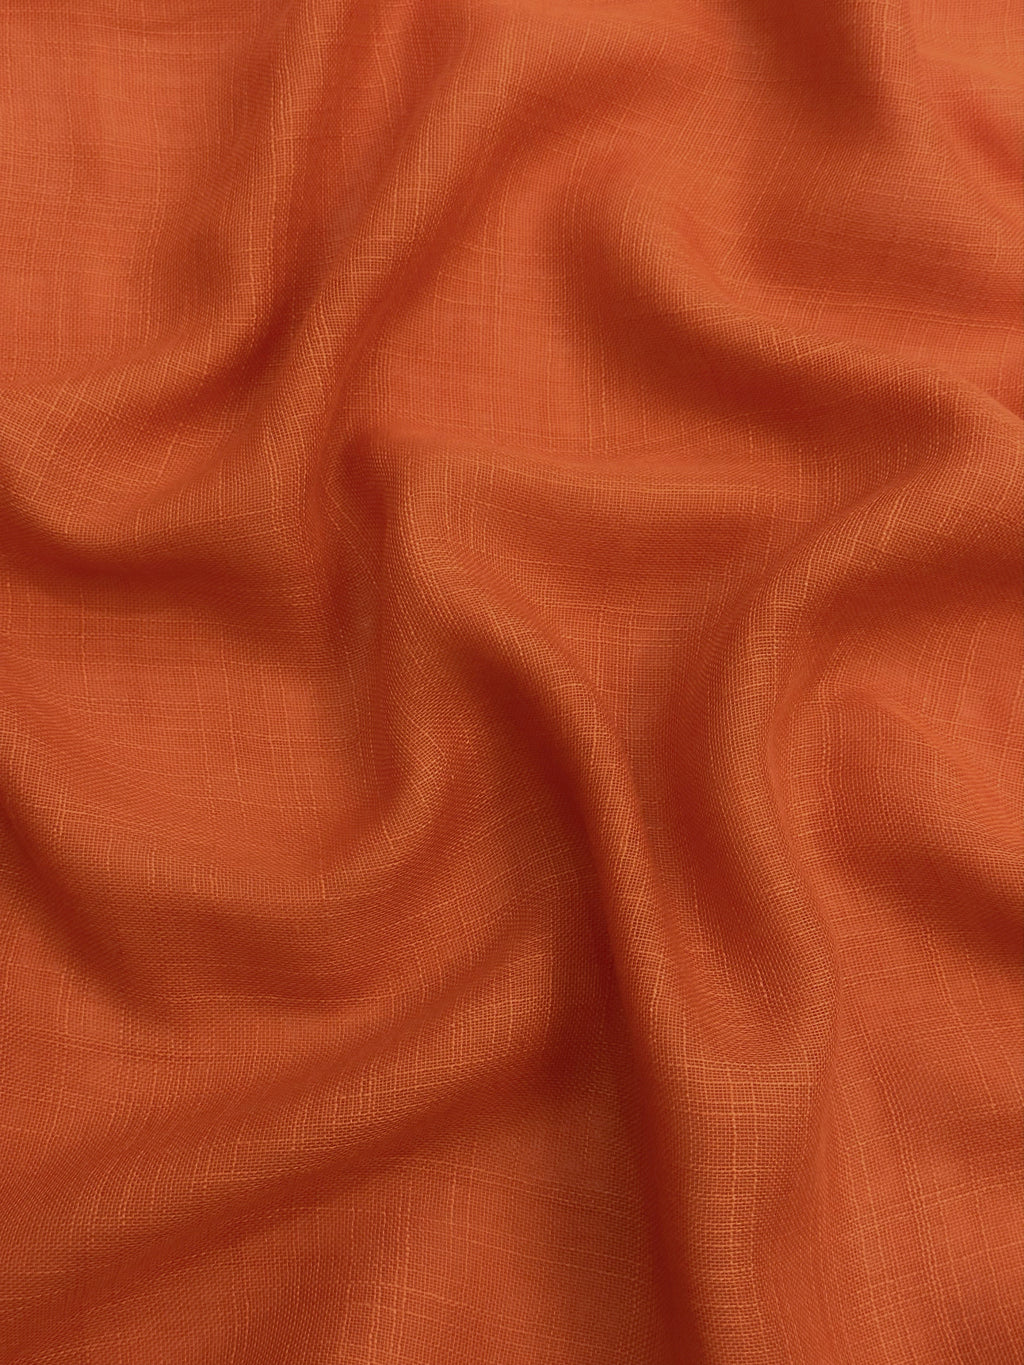 Textured Lawn Viscose - Orange